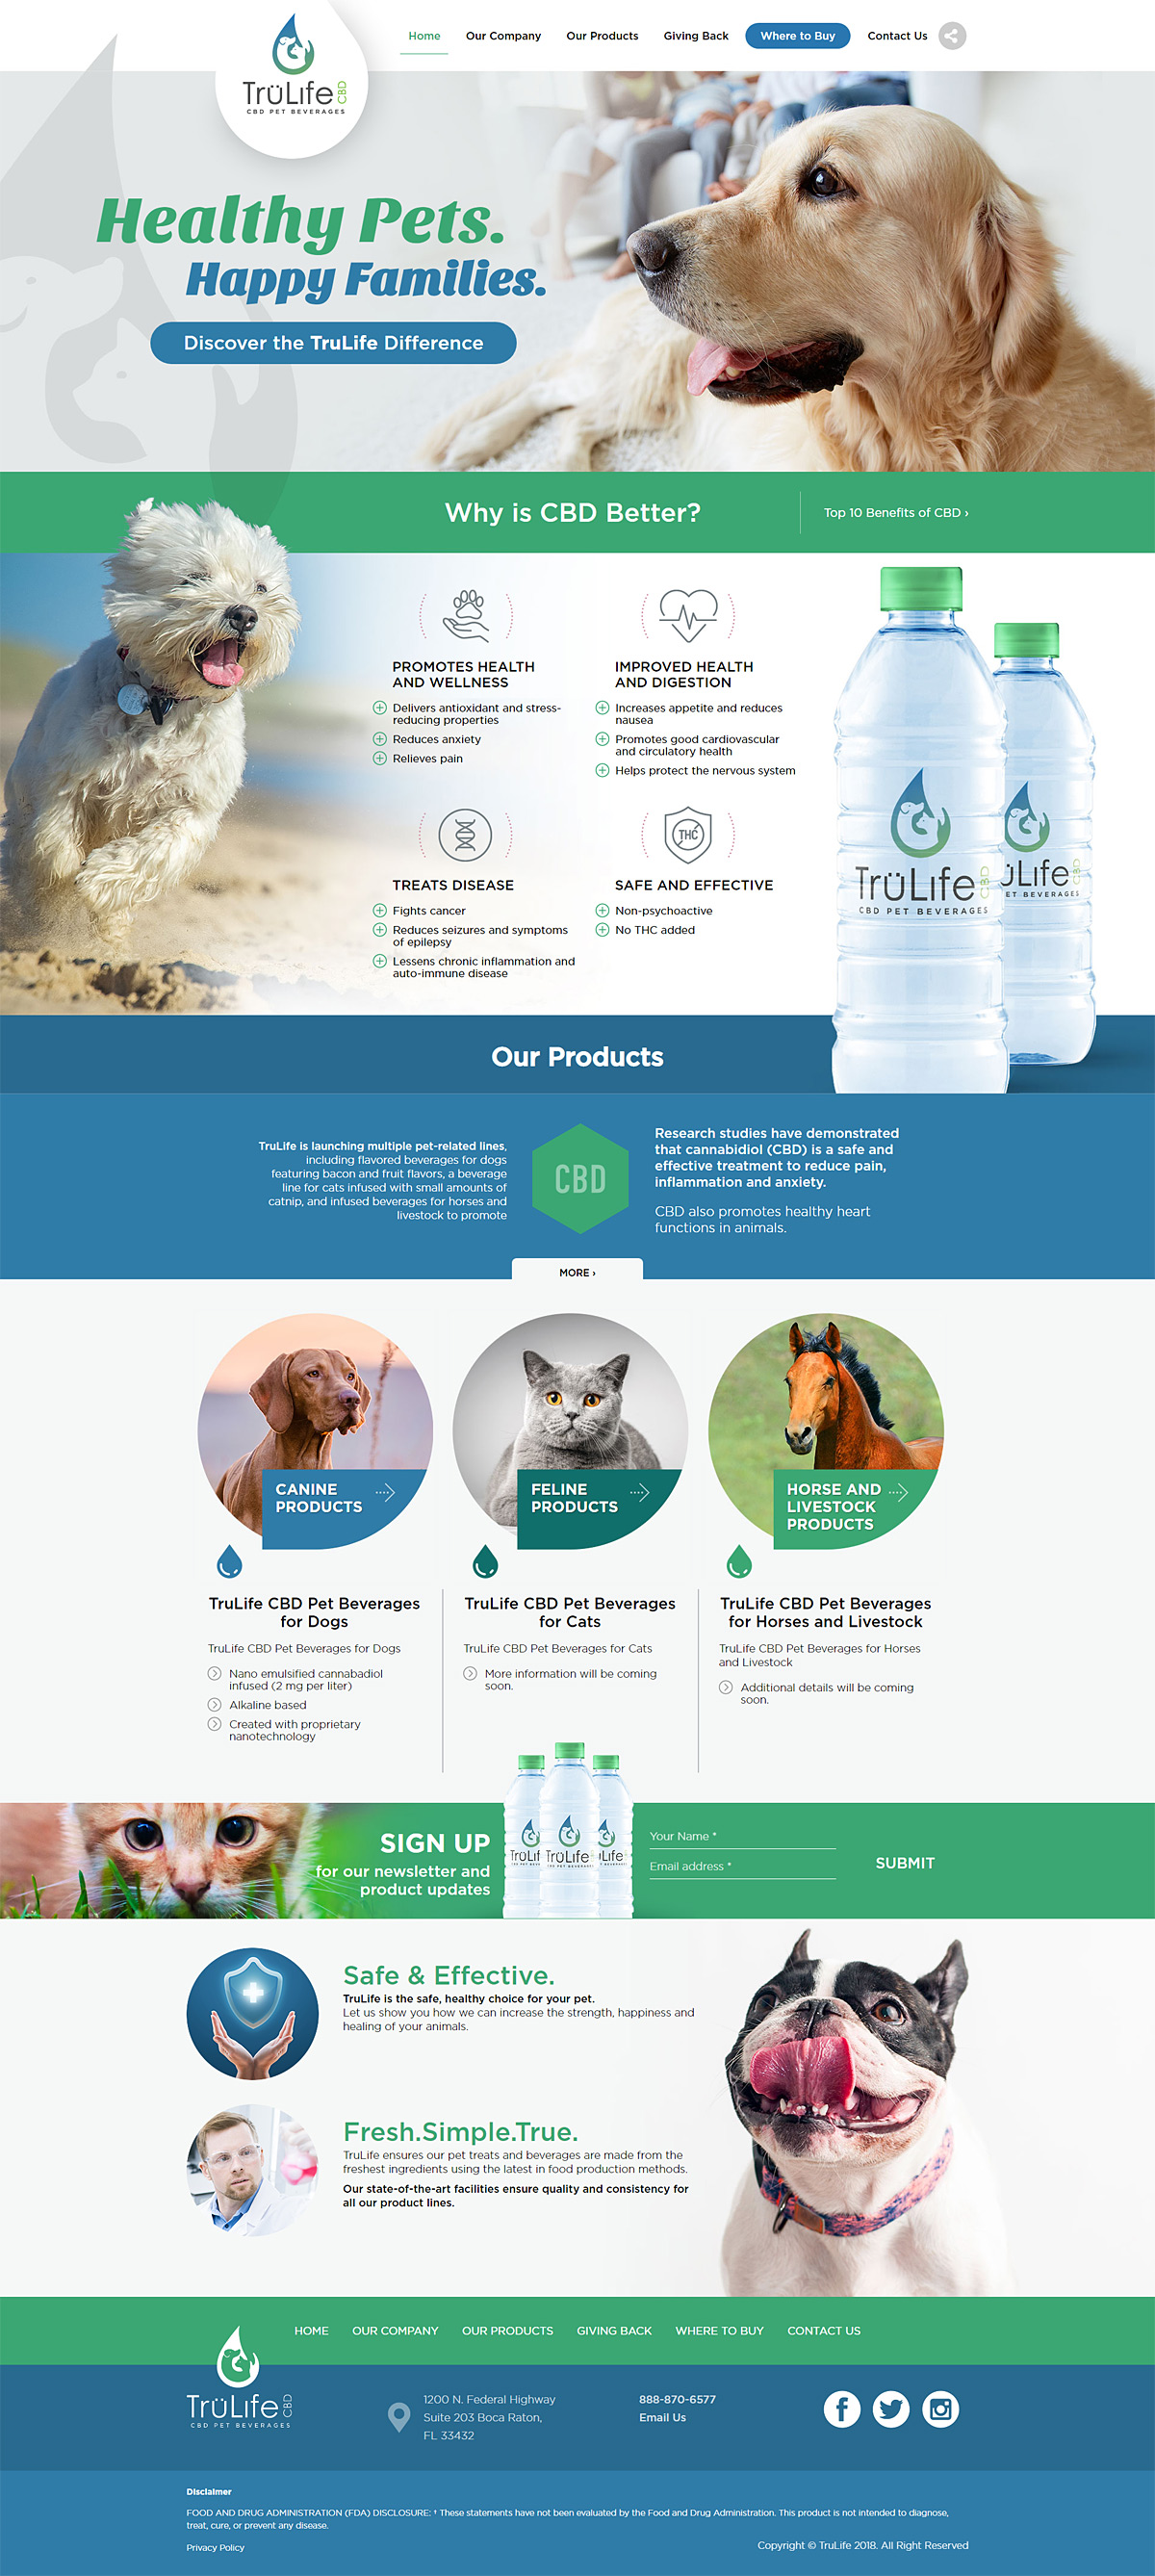 Pet Care Products Website Design - TruLife - LightMix